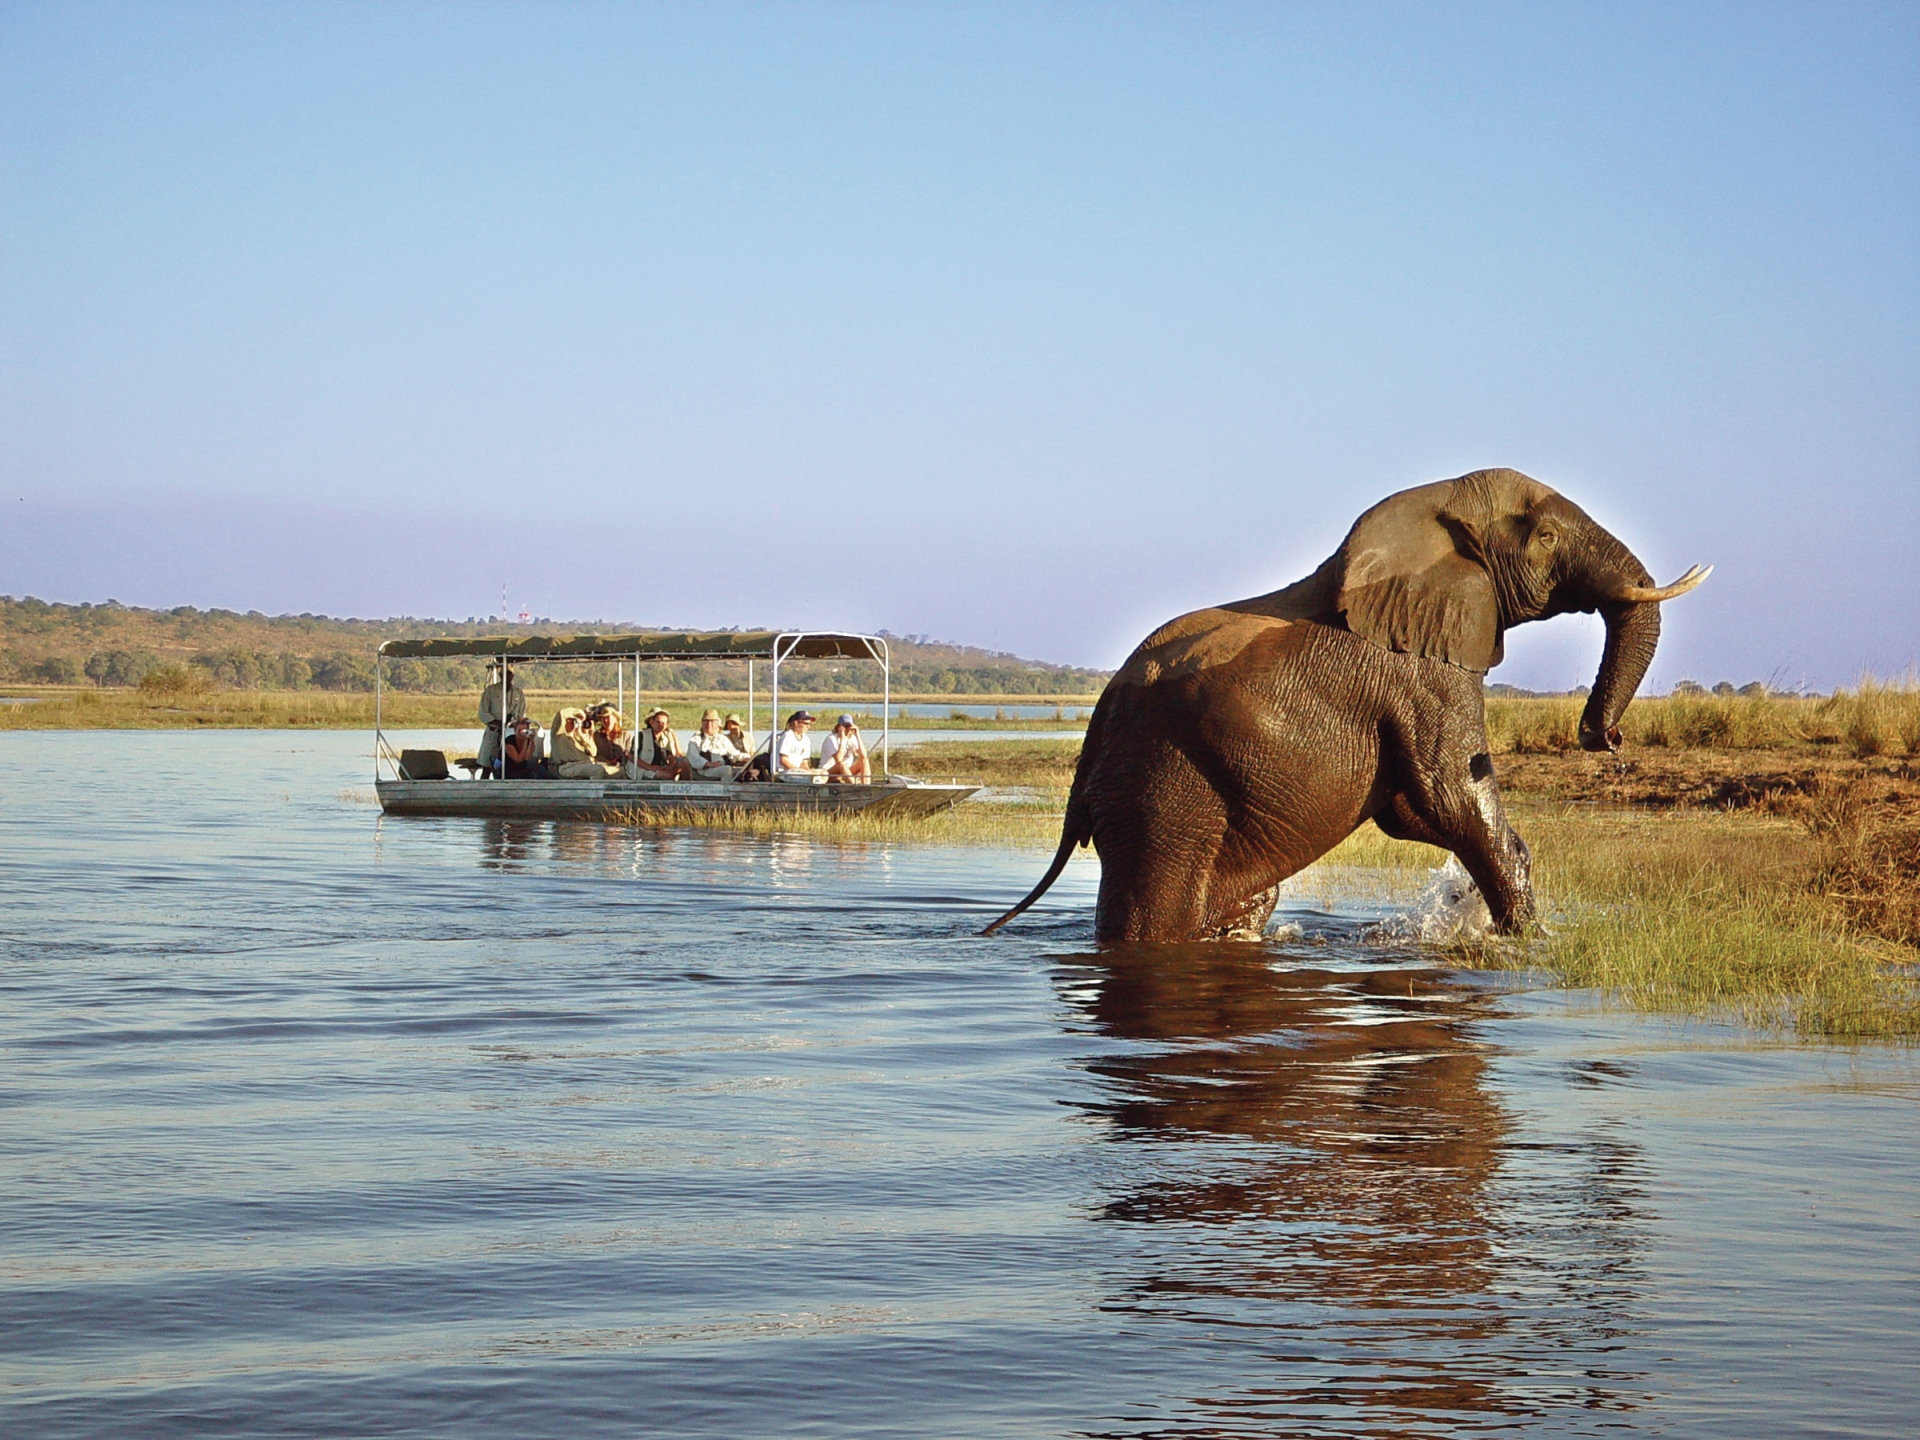 Boat trip on Zambezi - Highlights of Victoria Falls & Botswana